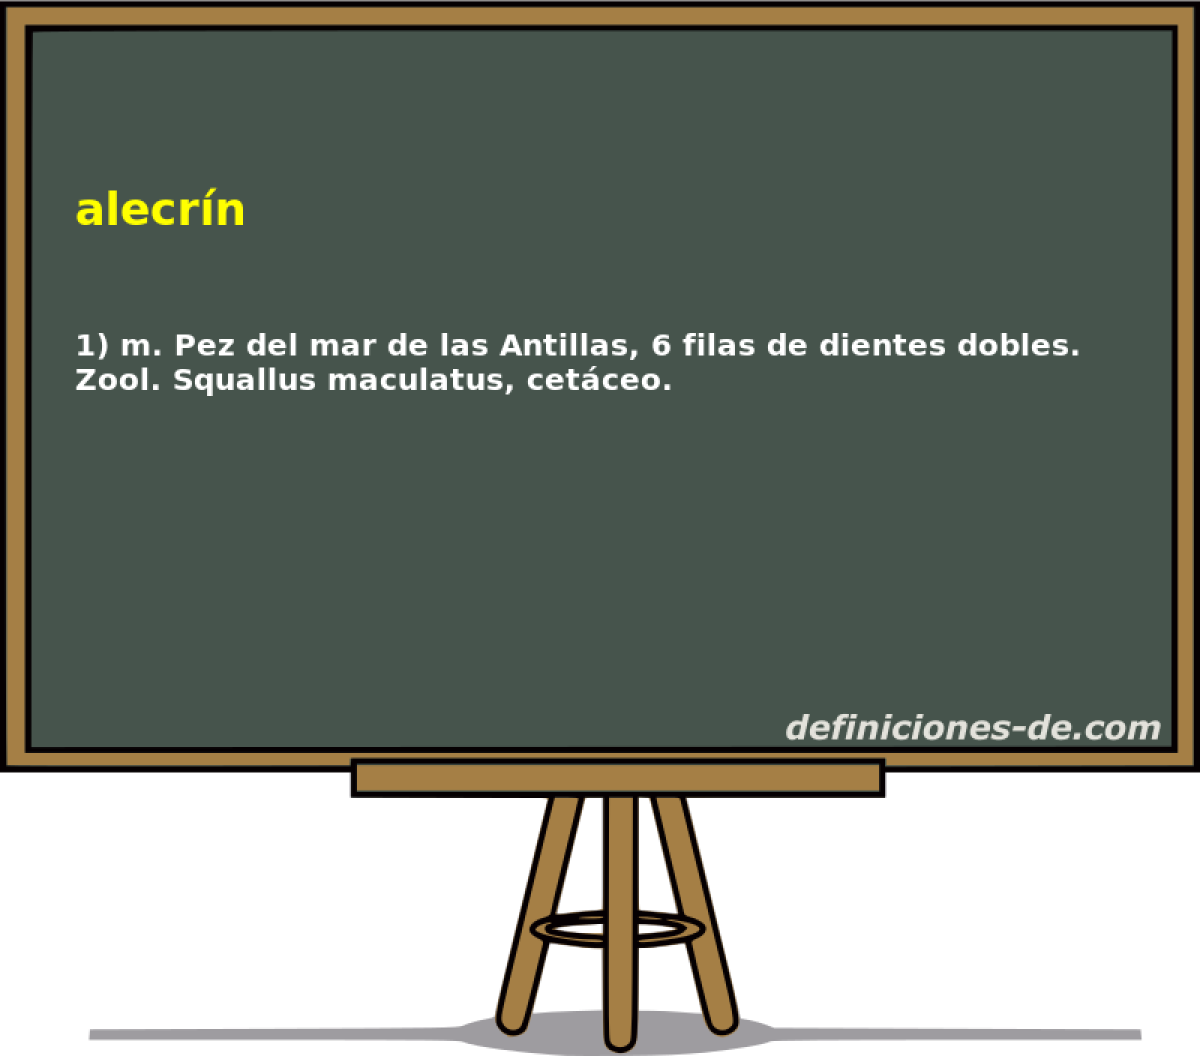 alecrn 